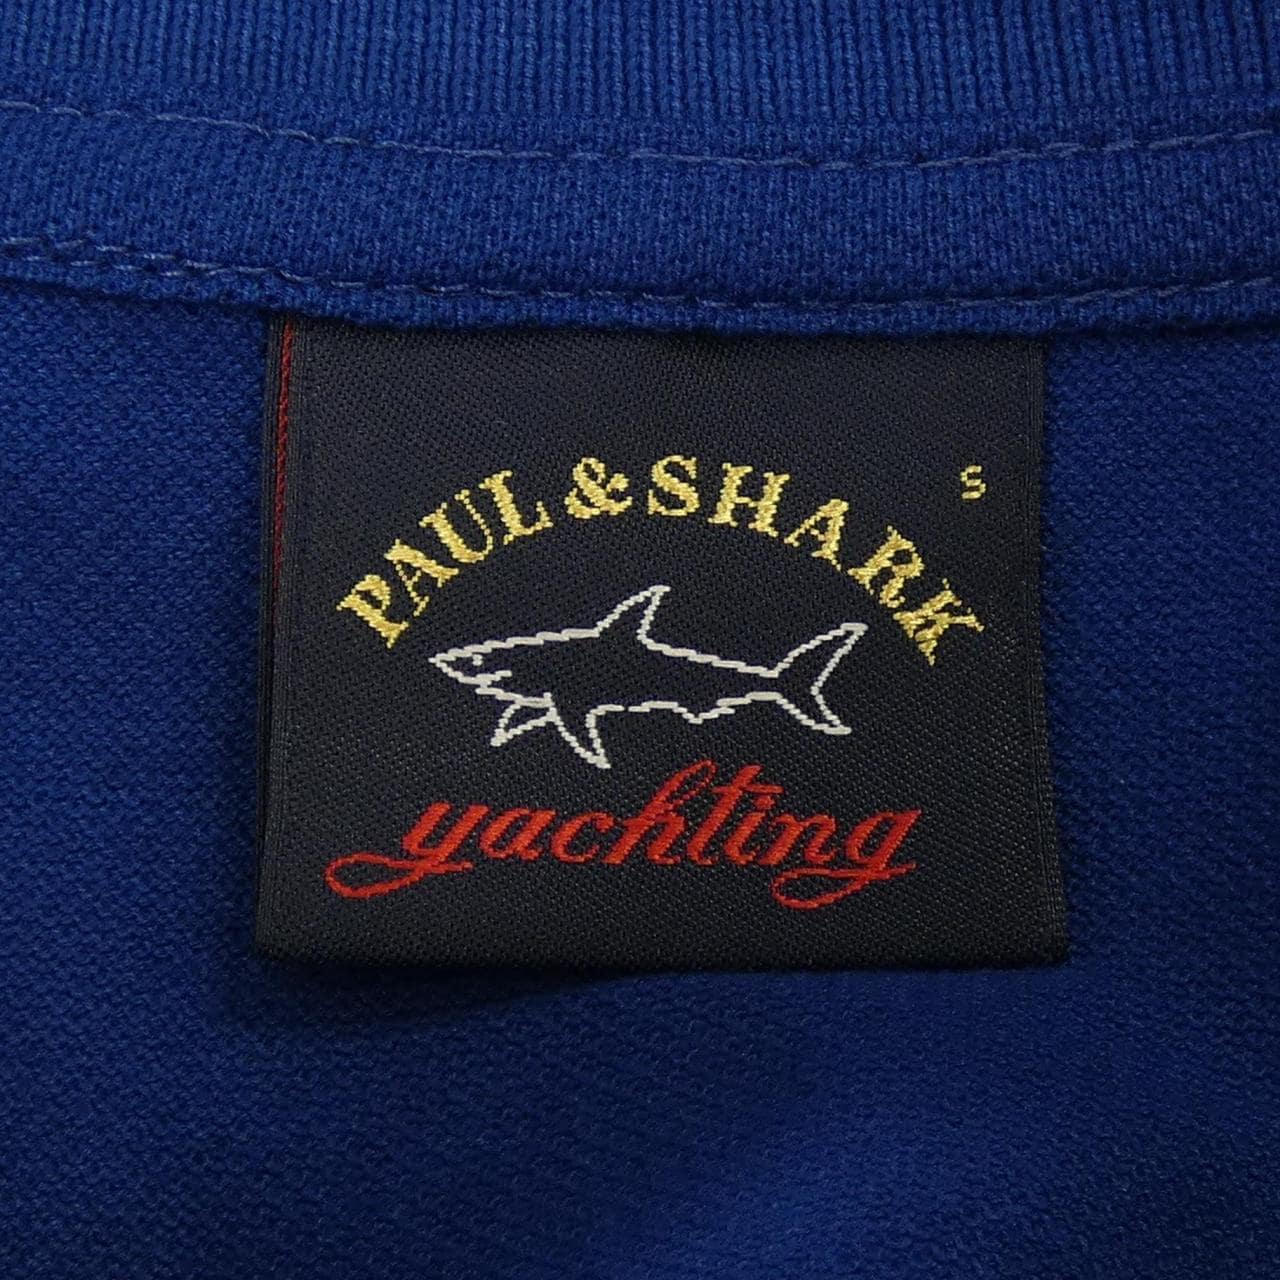 ポールアンドシャーク PAUL&SHARK ポロシャツ